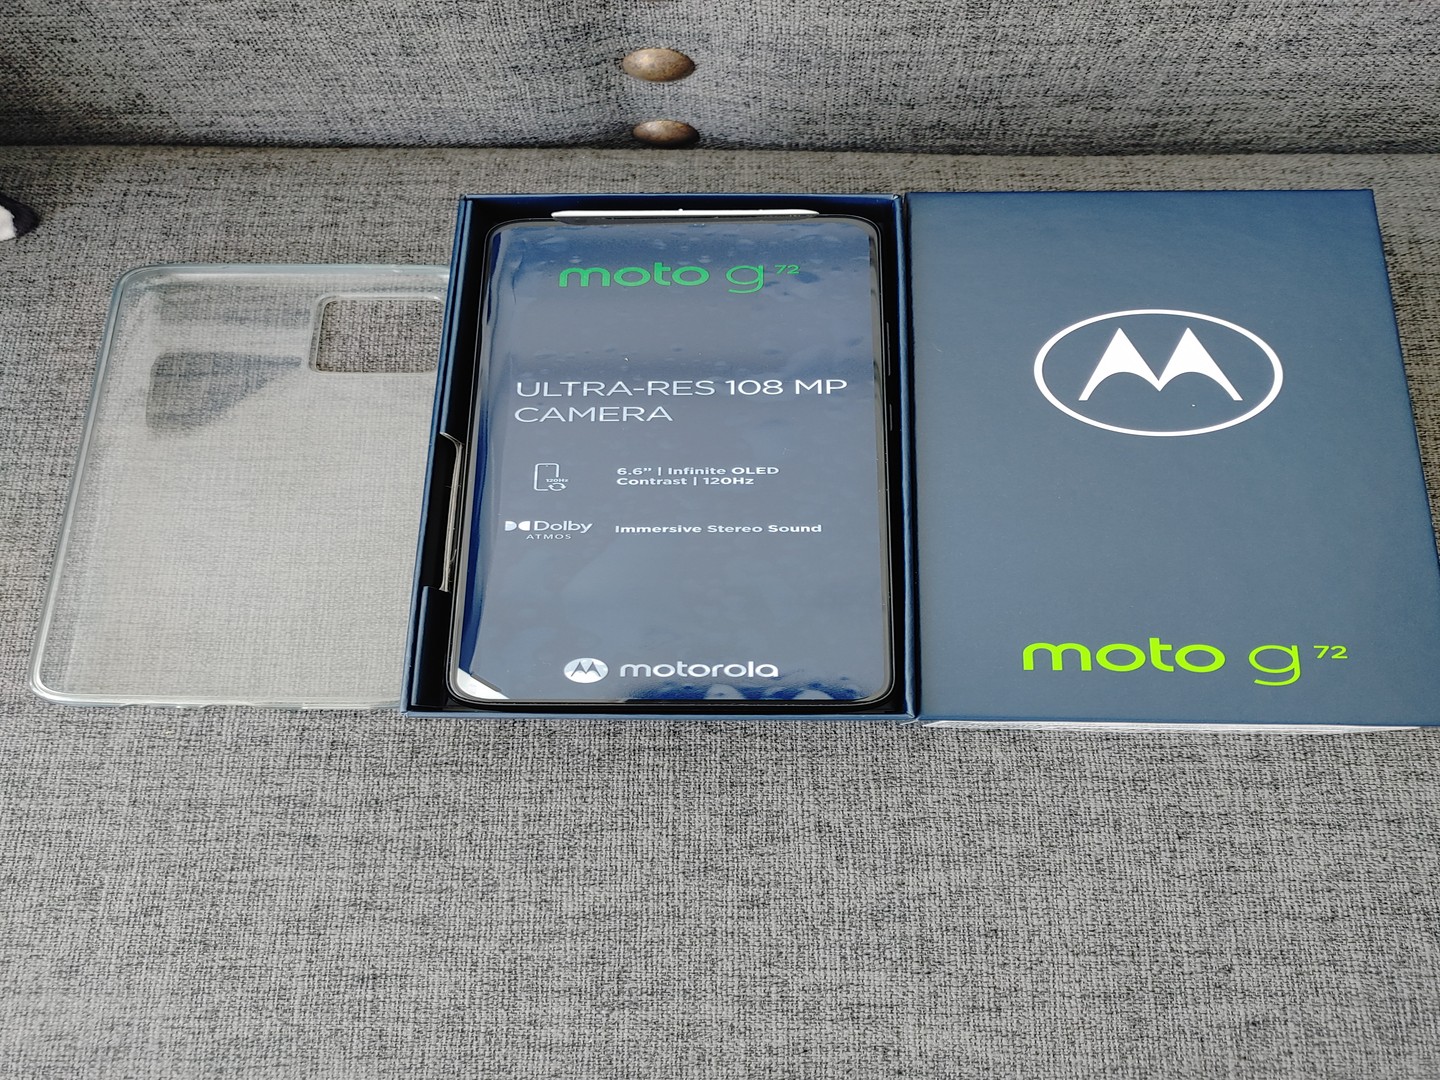 celulares y tabletas - Motorola G72 nuevo en su caja de claro